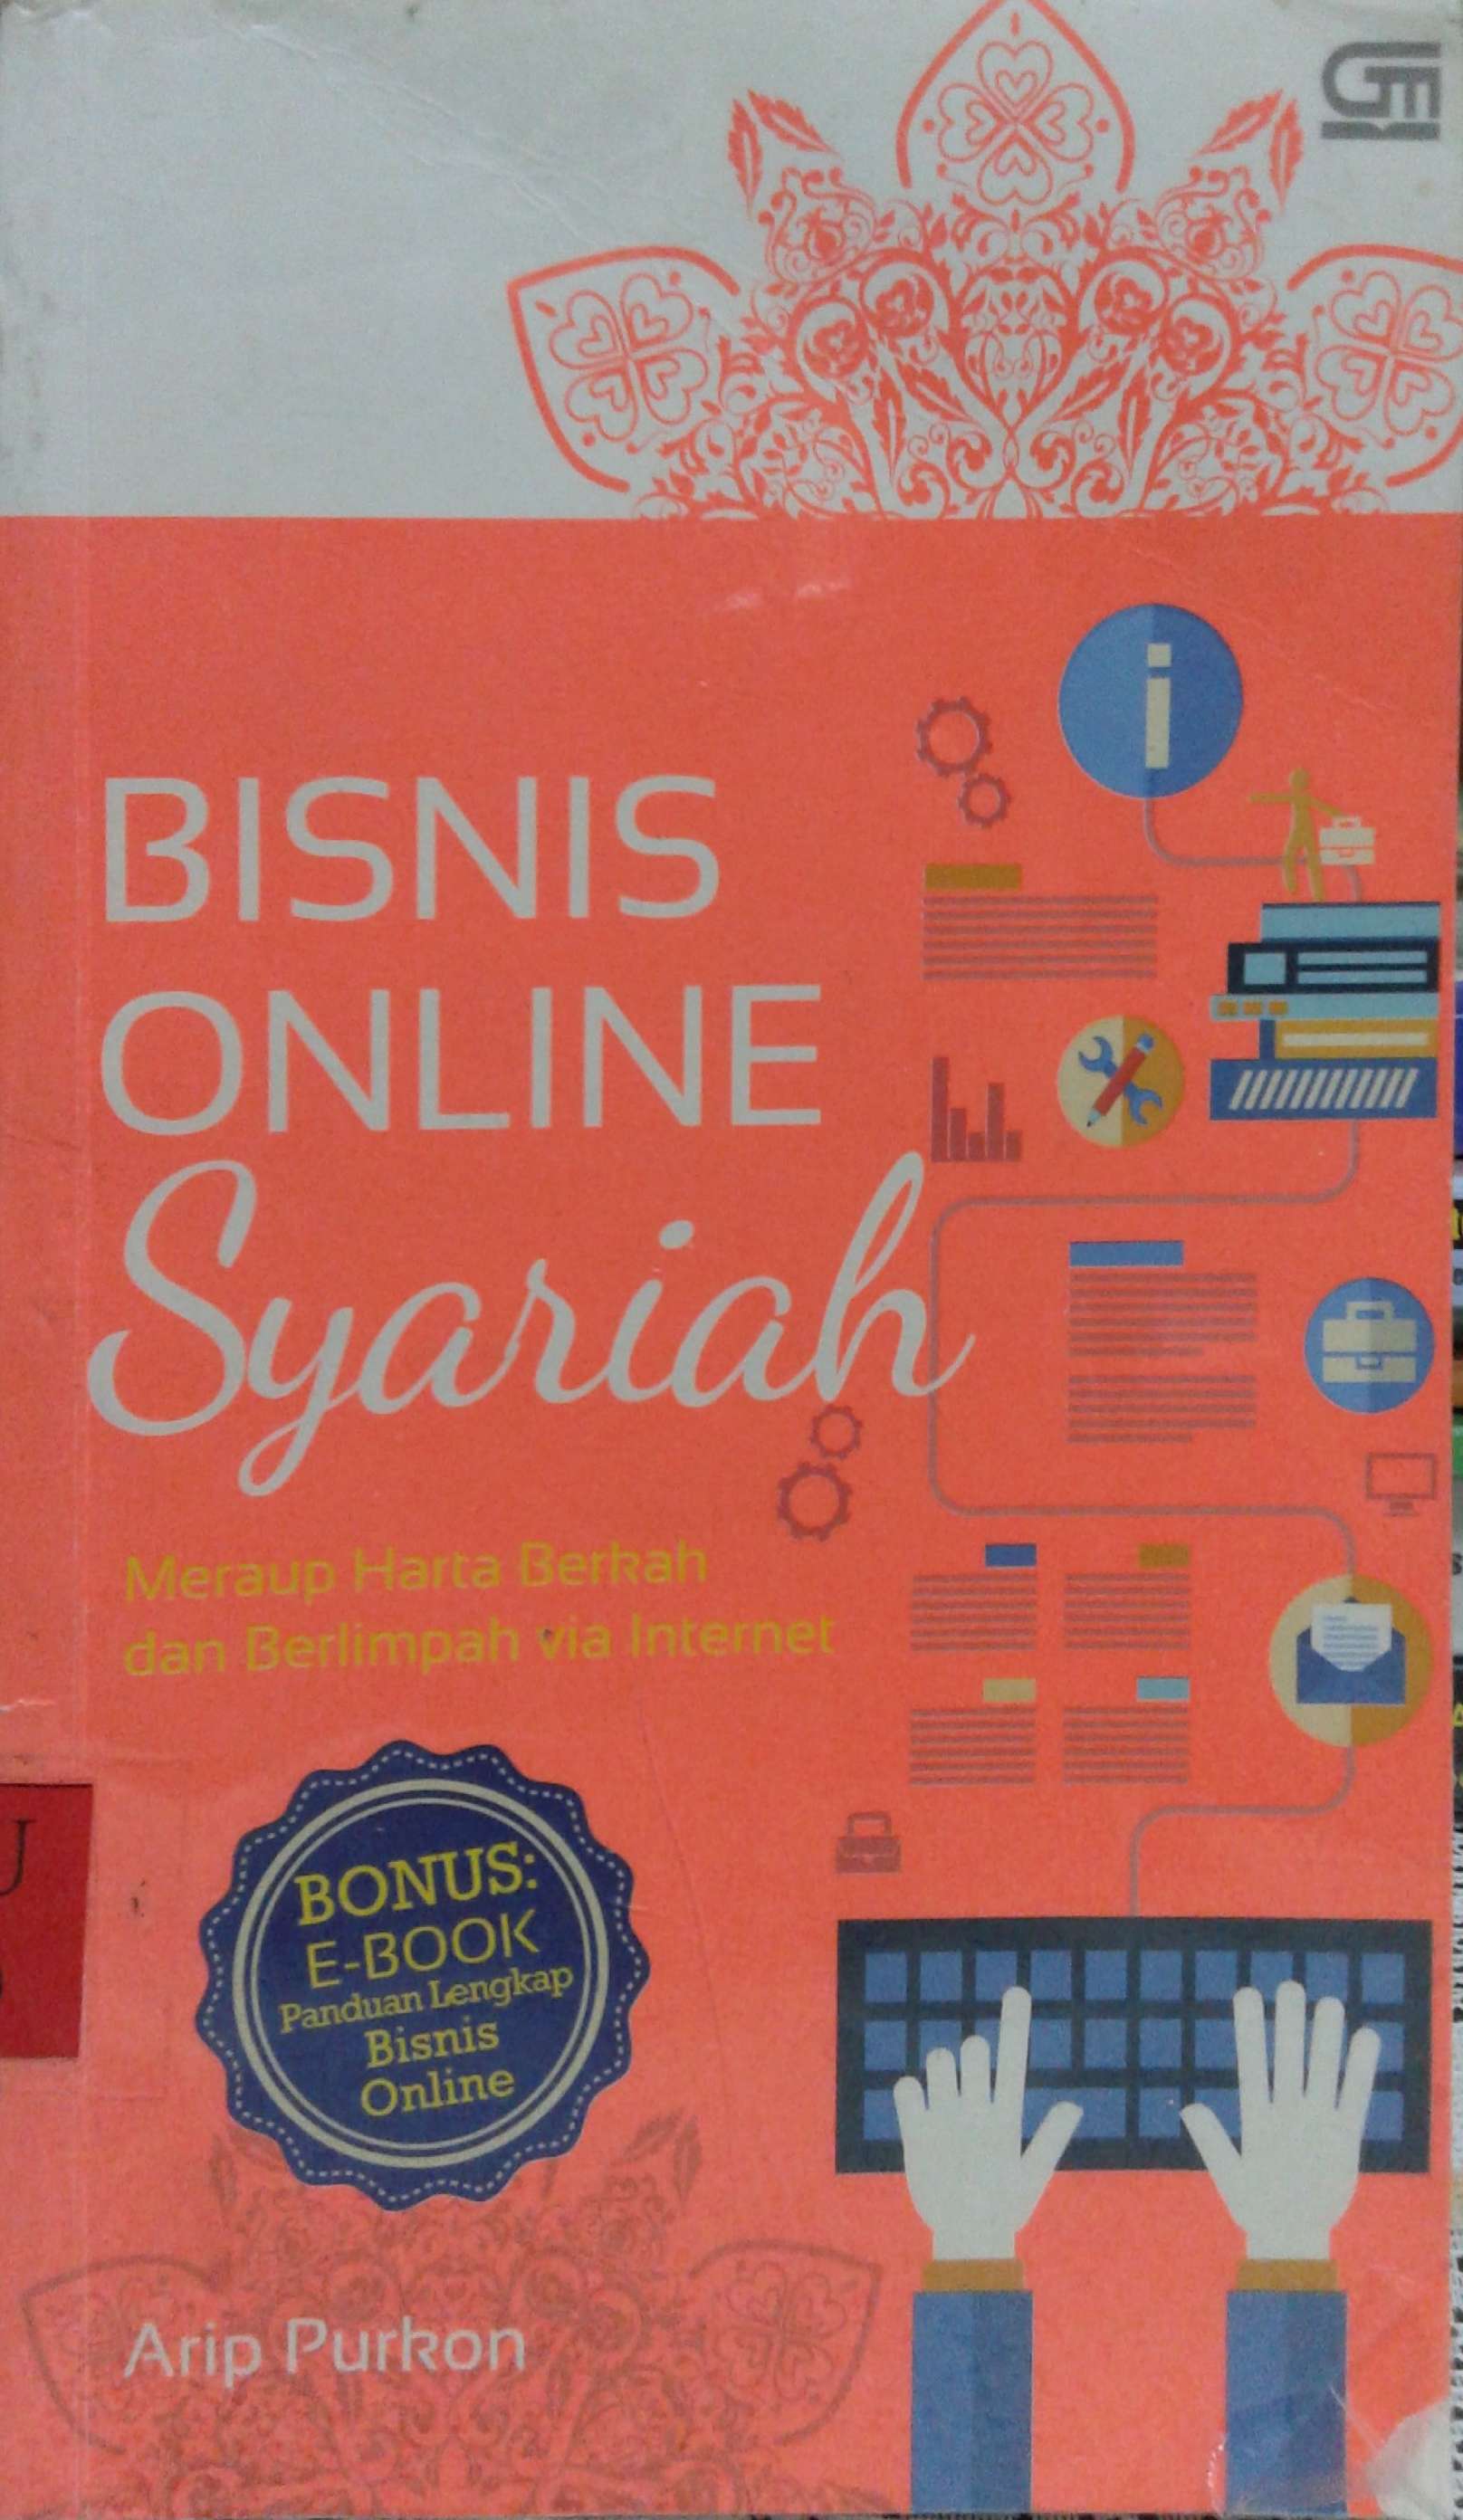 Bisnis Online Syariah Meraup Harta Berkah dan Berlimpah Via Internet